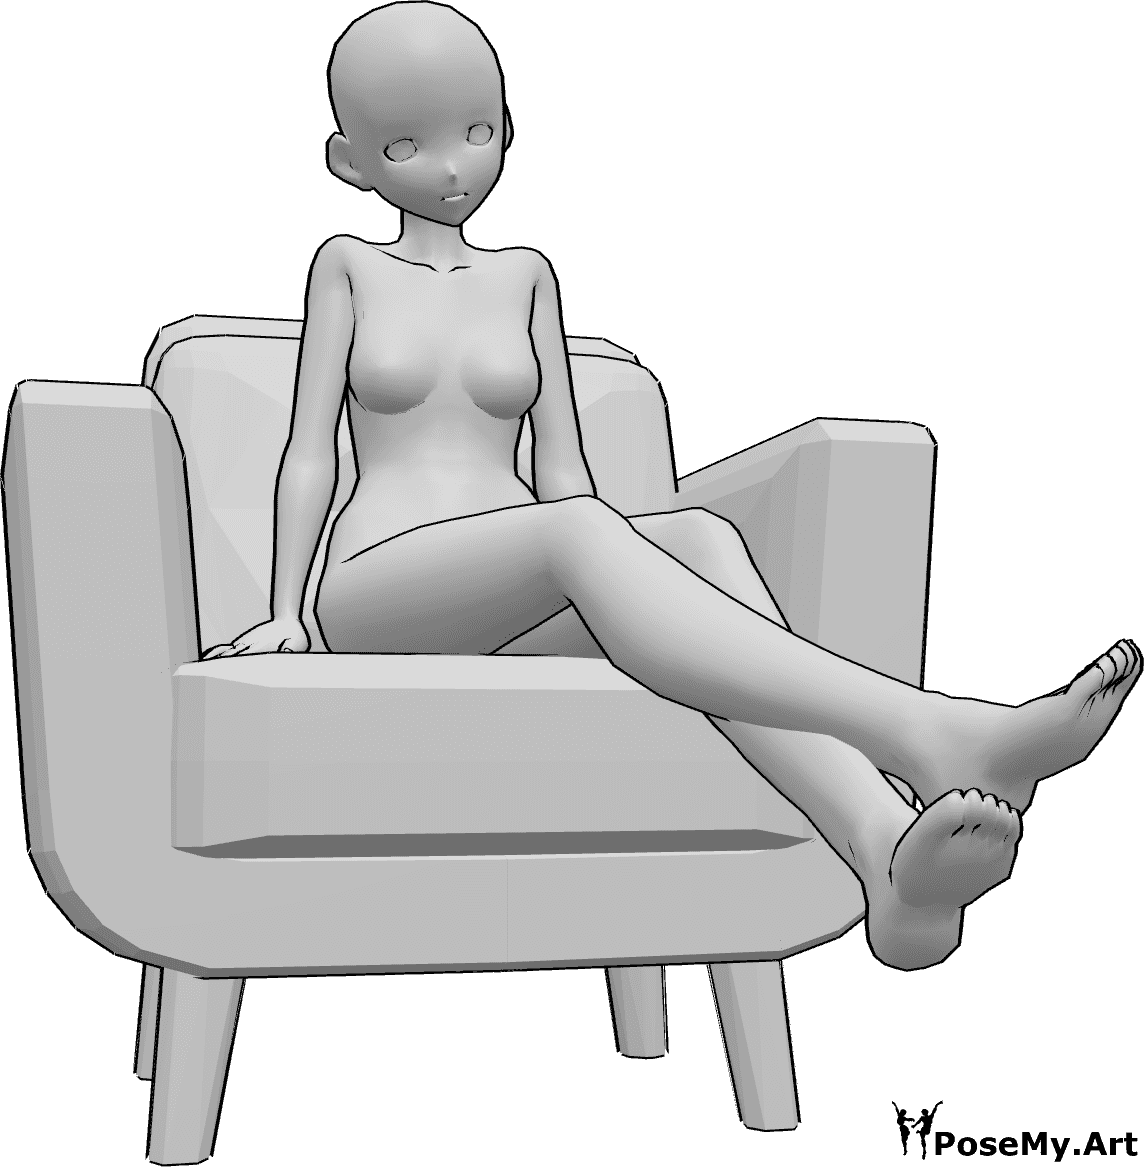 Référence des poses- Pose de l'animateur qui lève les jambes - La femme anime est assise dans le fauteuil et lève les jambes.